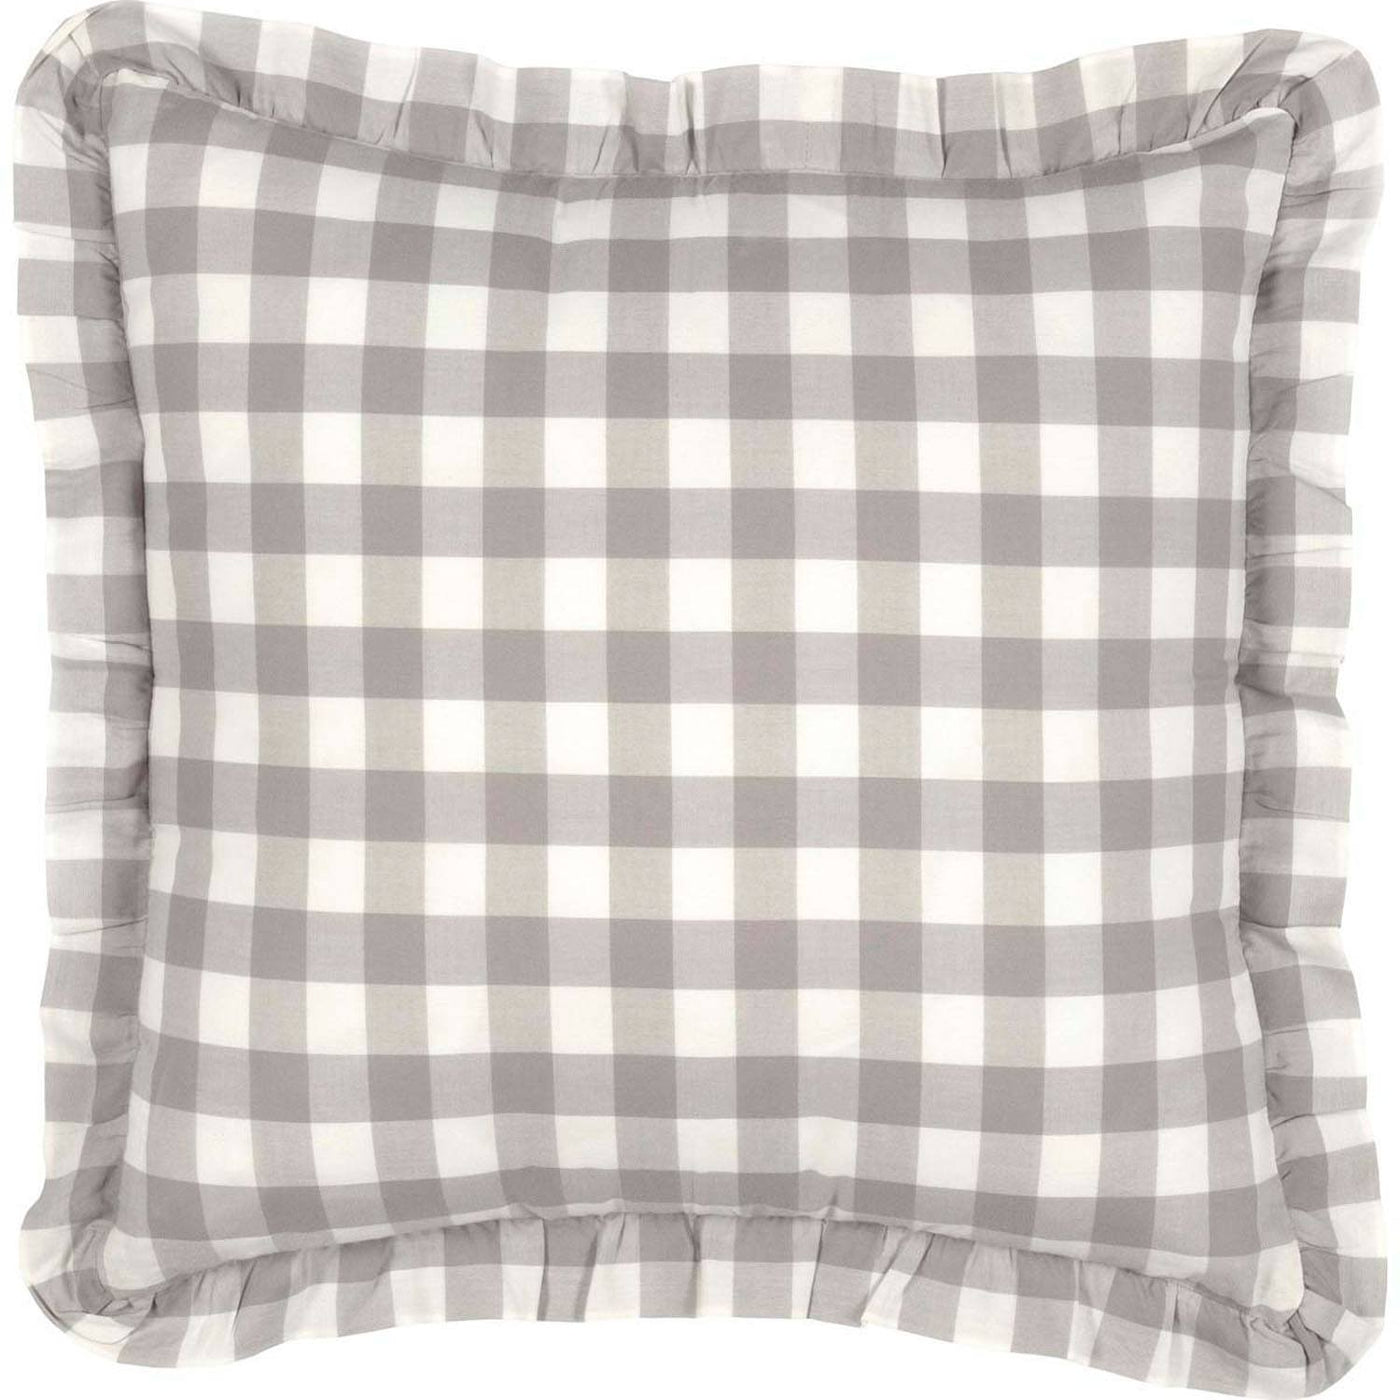 Kuna 18 x 18 Ruffled Pillow - Grey/White